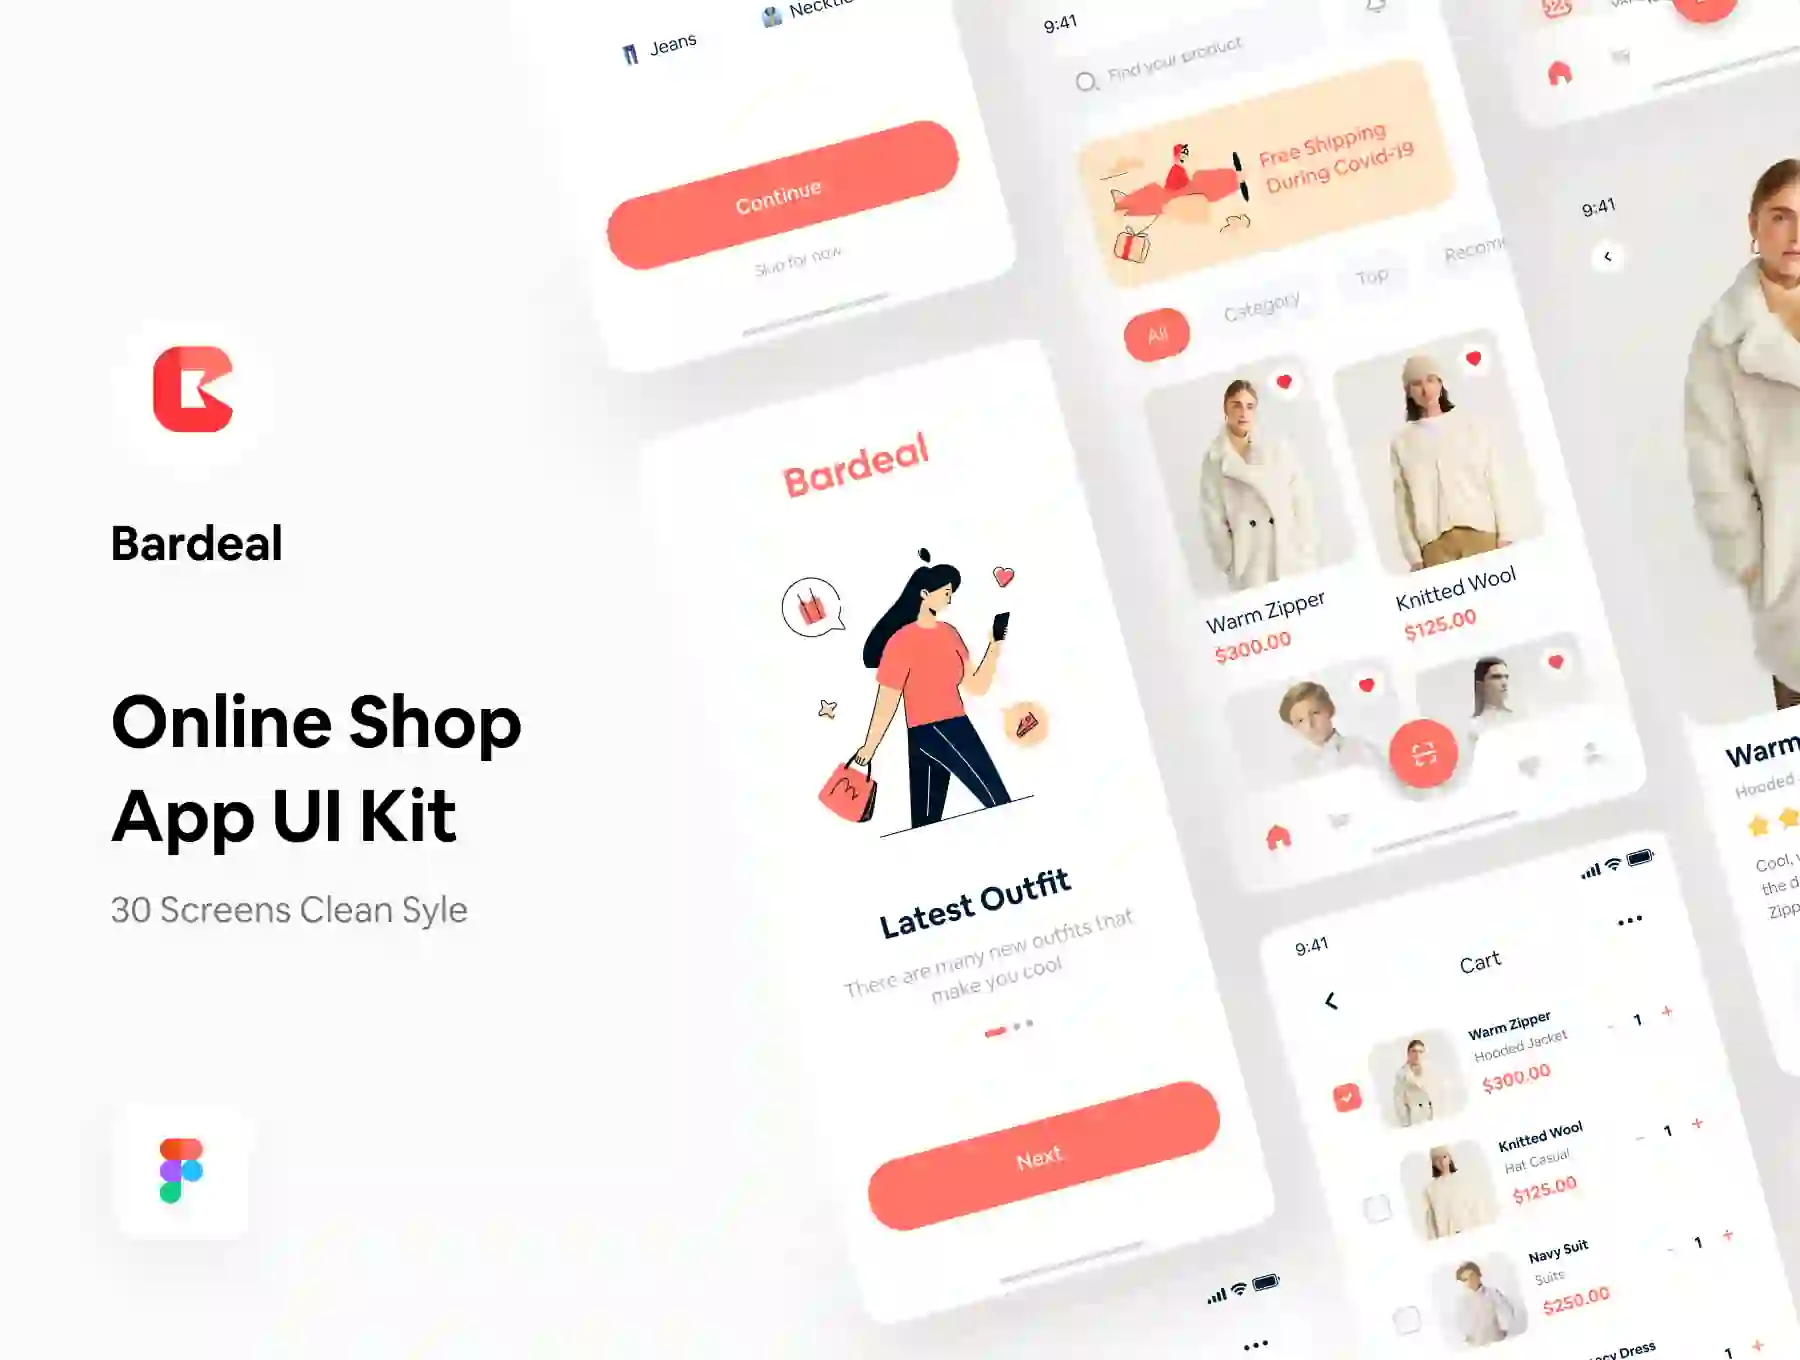 Bardeal - Online Shop Mobile App UI KIT